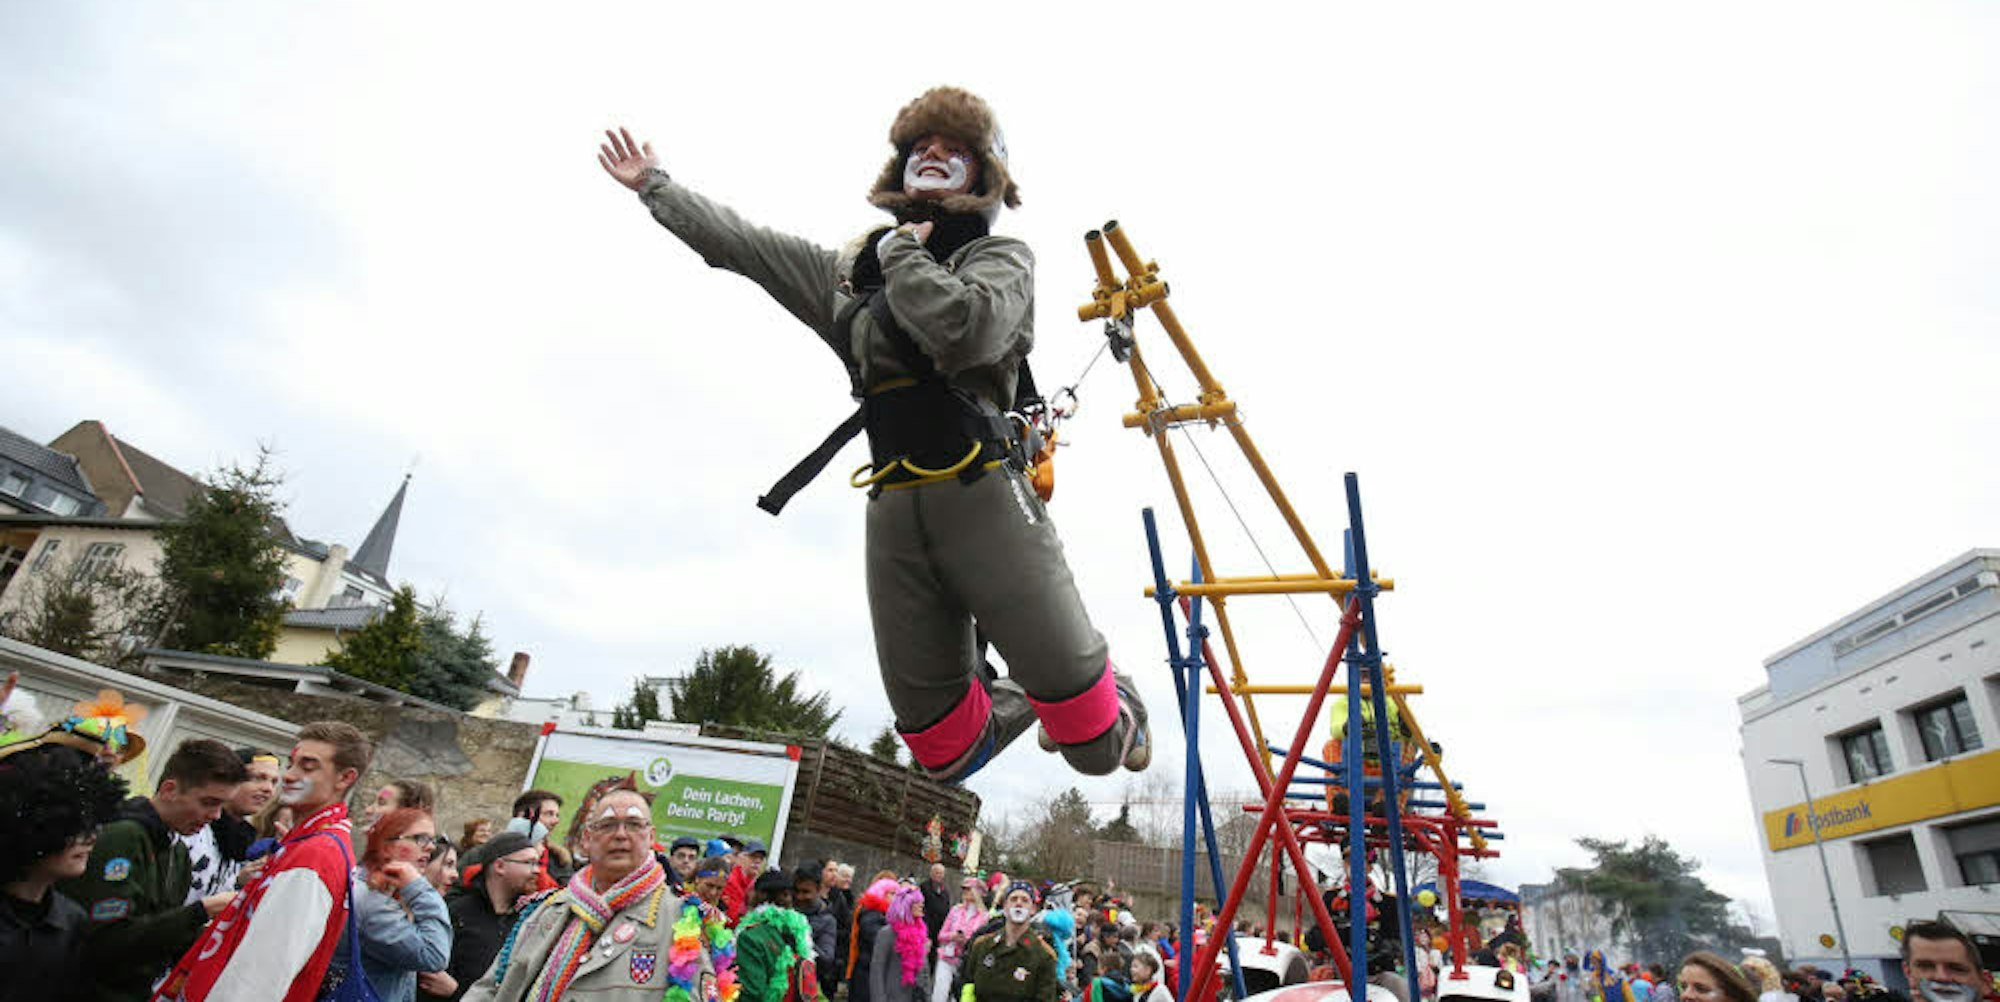 Hoch hinaus ging es für den fliegenden Clown des Circus Comicus, der sich mit insgesamt rund 250 Personen am Honnefer Karnevalszug beteiligt hat.